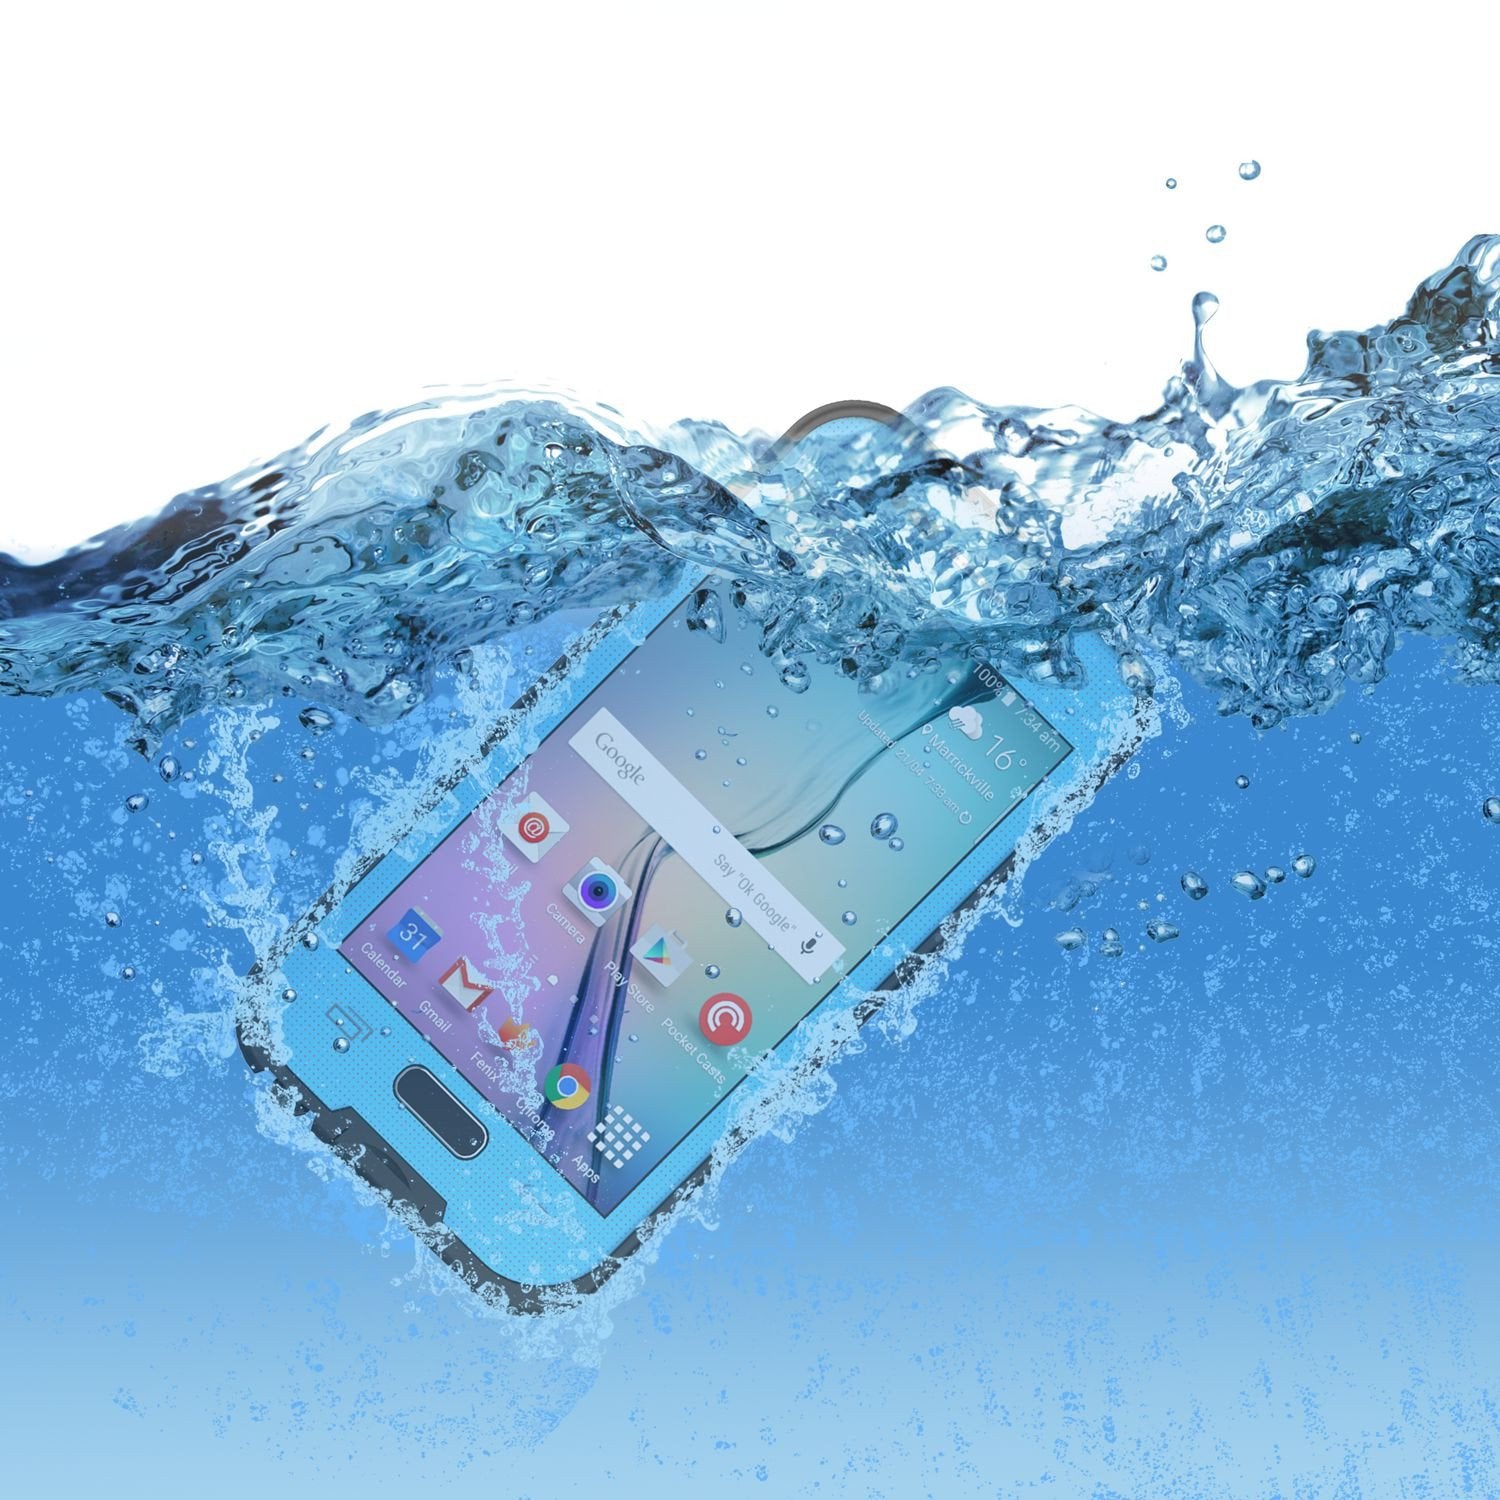 Galaxy S6 Waterproof Case, Punkcase SpikeStar Light Blue Water/Shock/Dirt Proof | Lifetime Warranty - PunkCase NZ